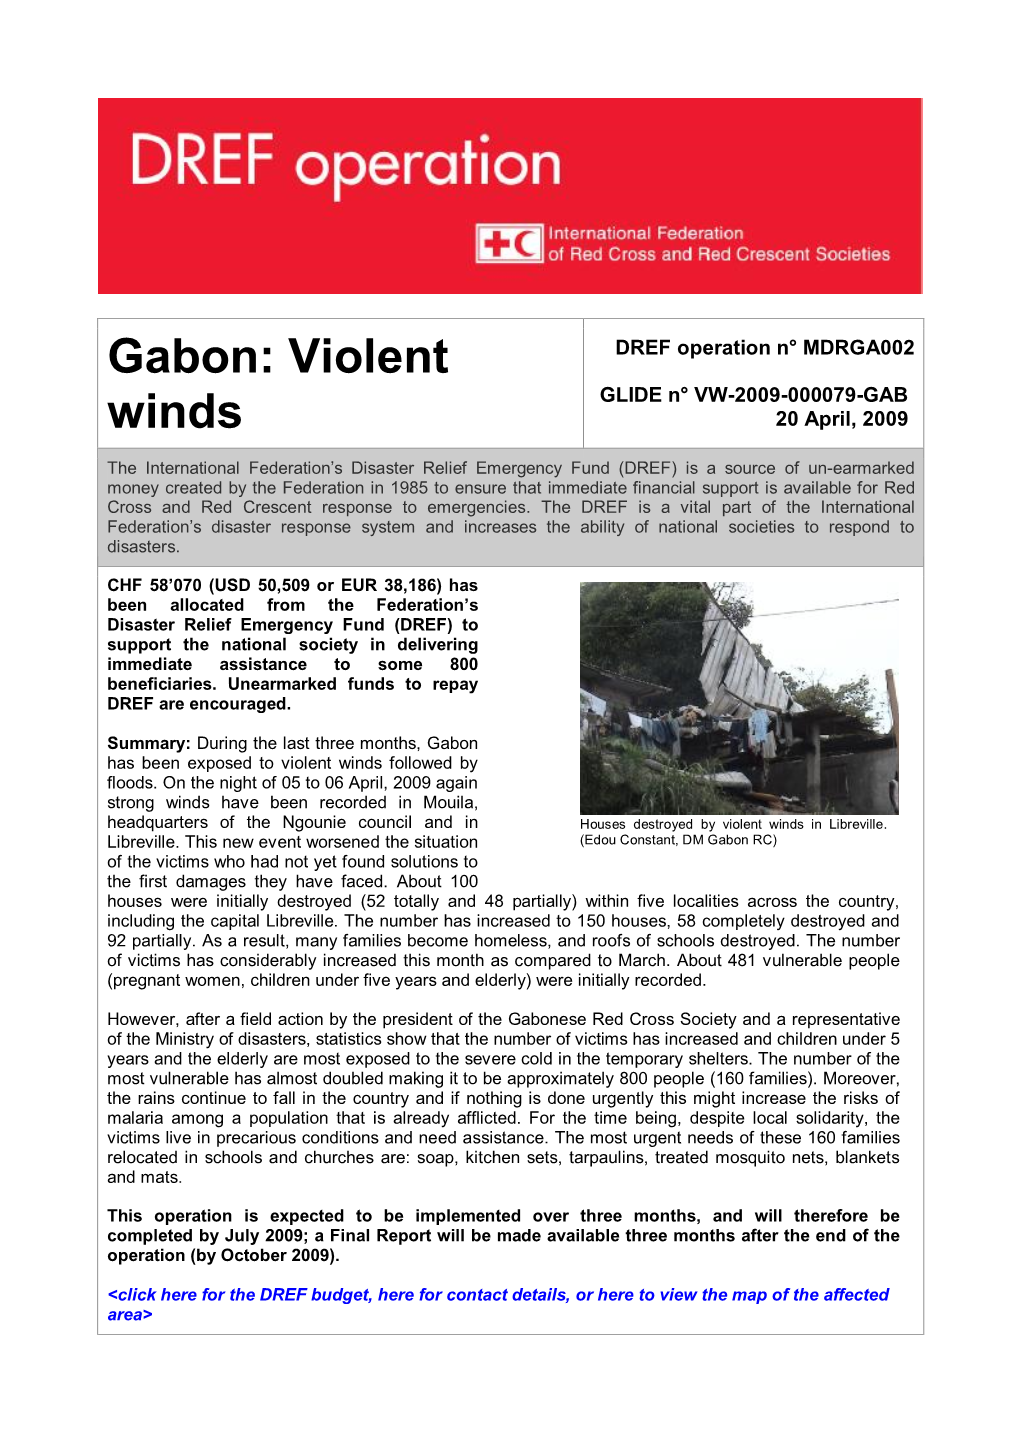 Gabon: Violent Winds